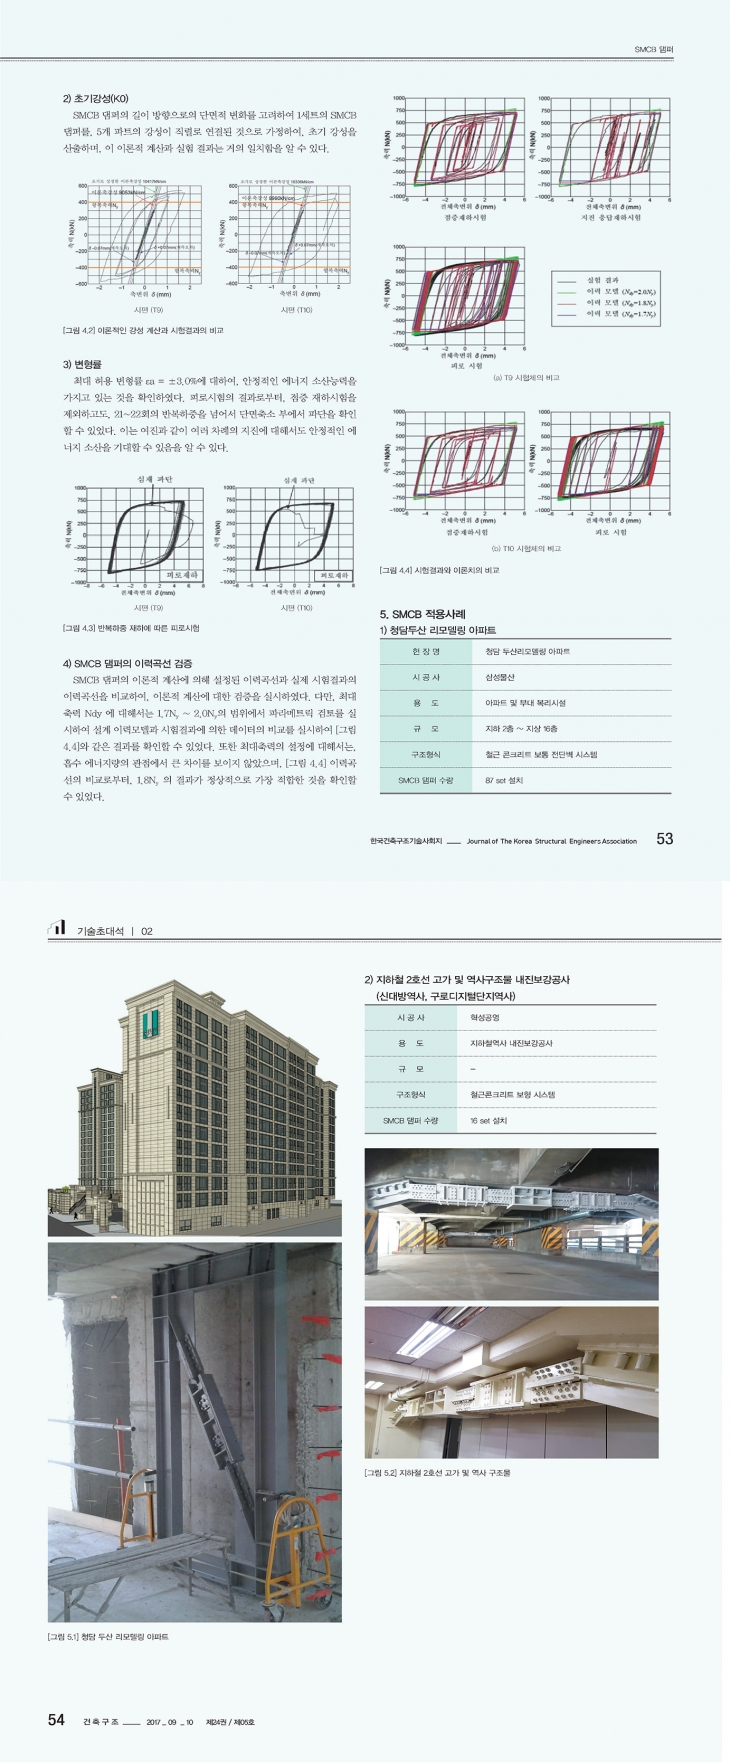 한국건축구조기술사 회지의 SMCB 댐퍼 소개